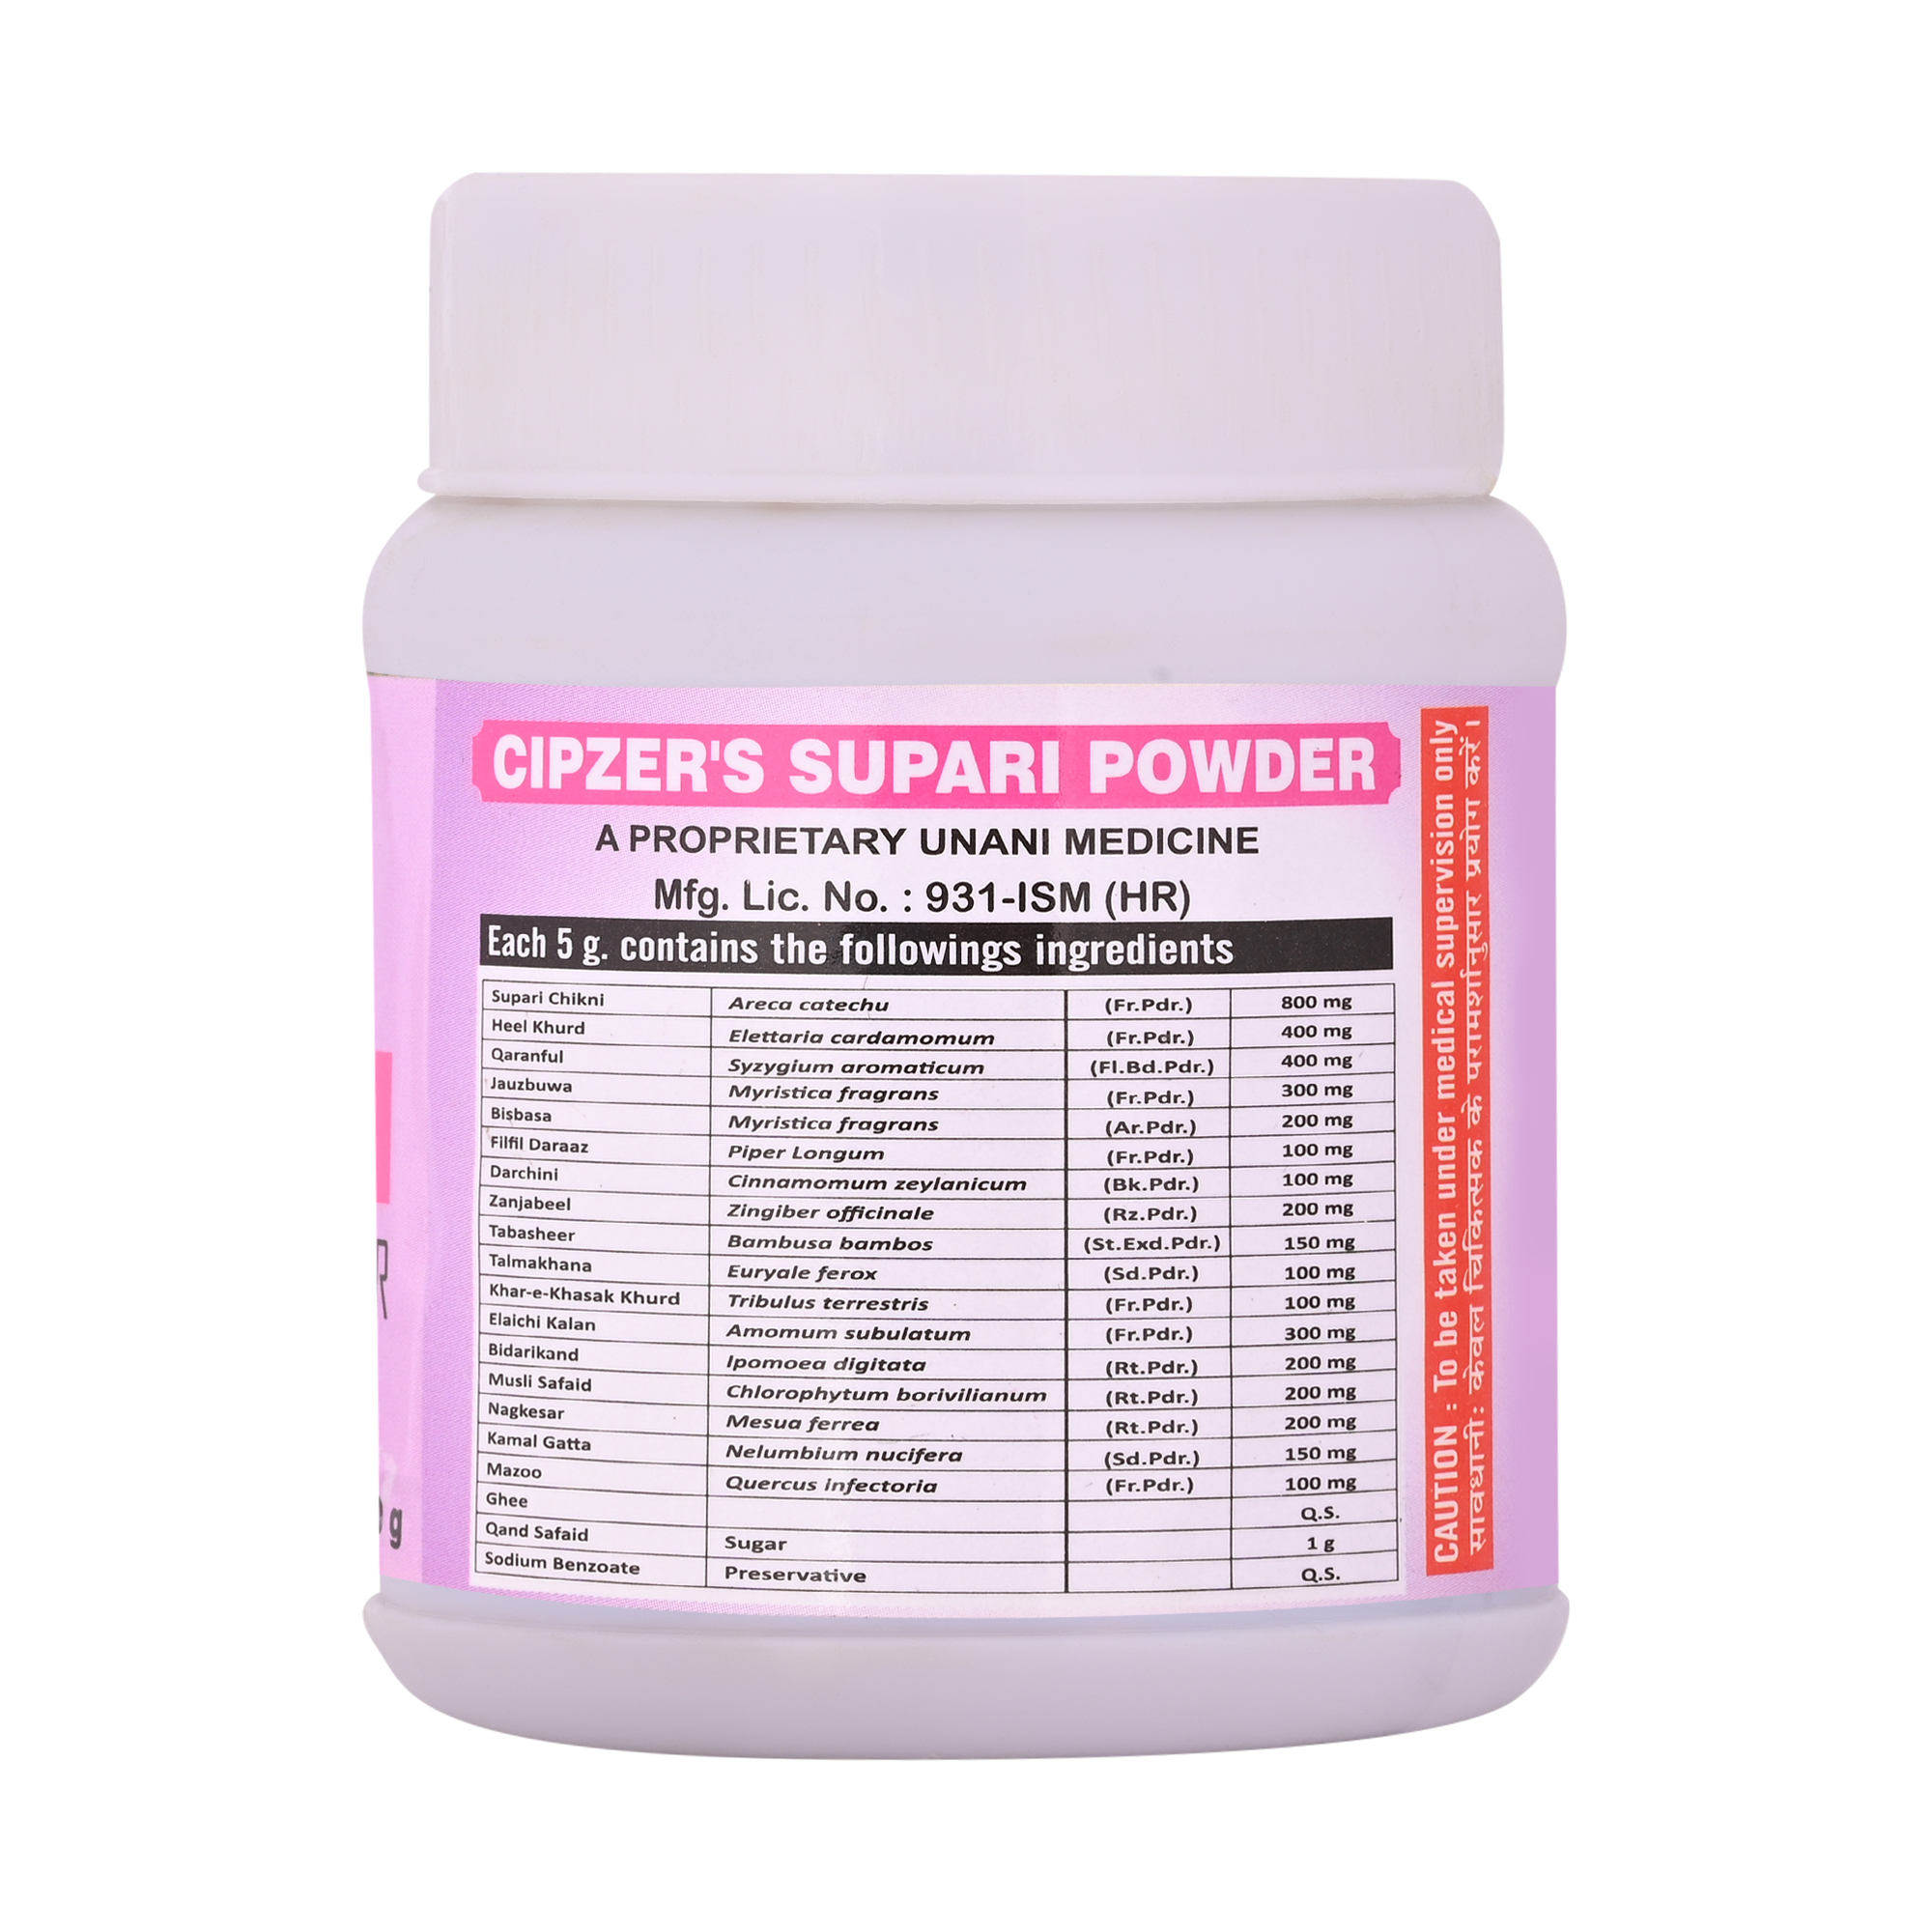 Buy Cipzer Supari Powder at Best Price Online